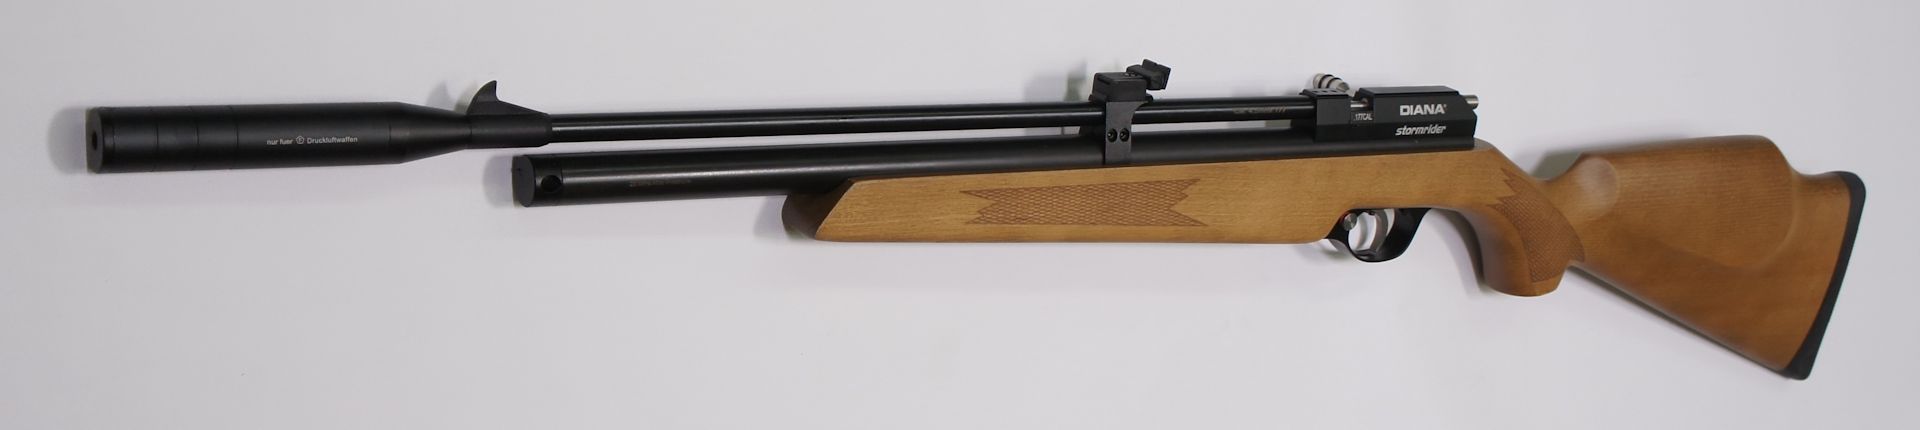 PCP Luftgewehr DIANA STORMRIDER im Kaliber 4,5 mm mit hölzernem Schaft, F